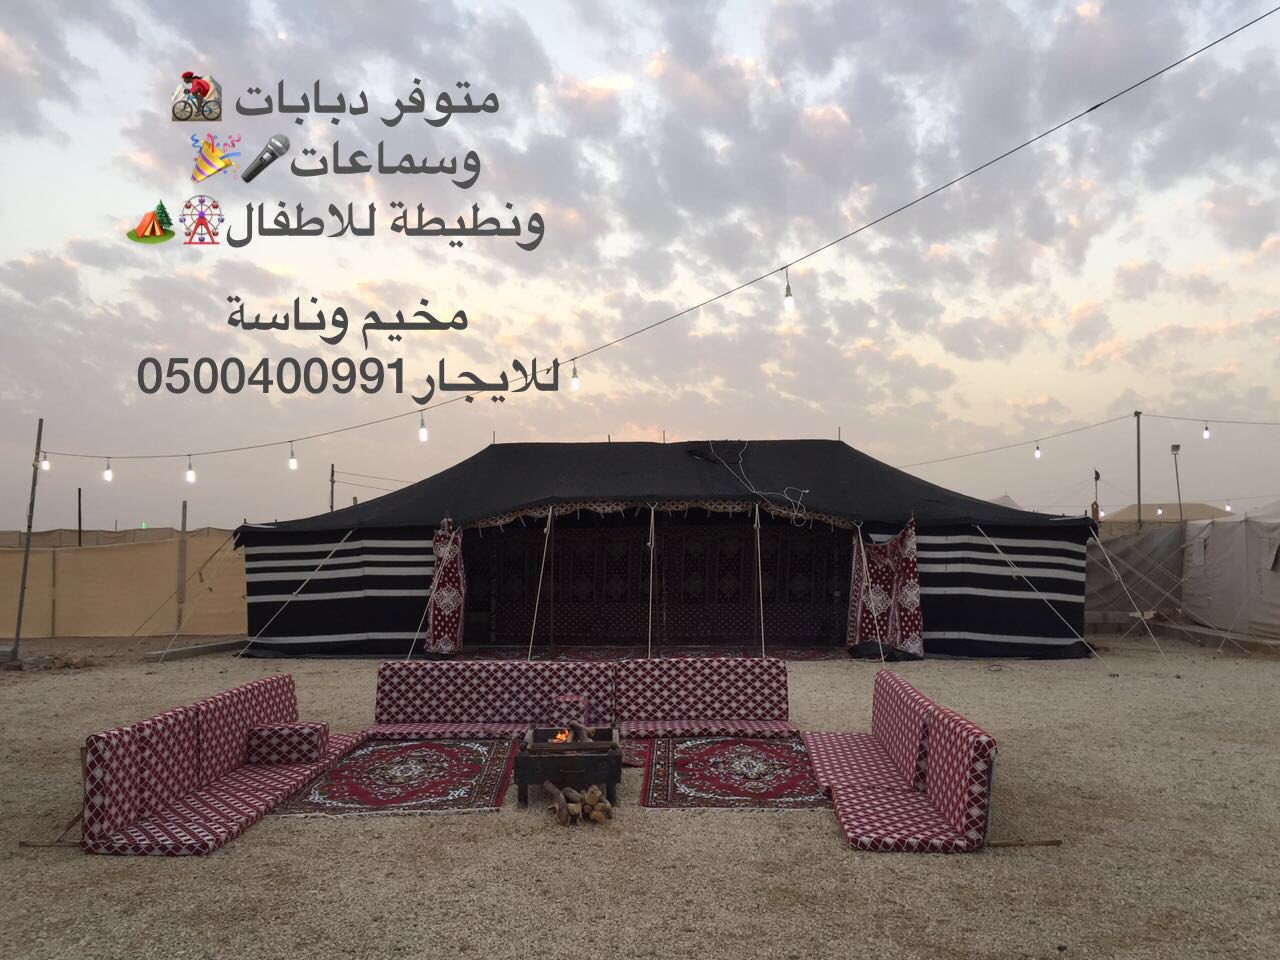 الطائف مخيم سفاري مخيم عمارين